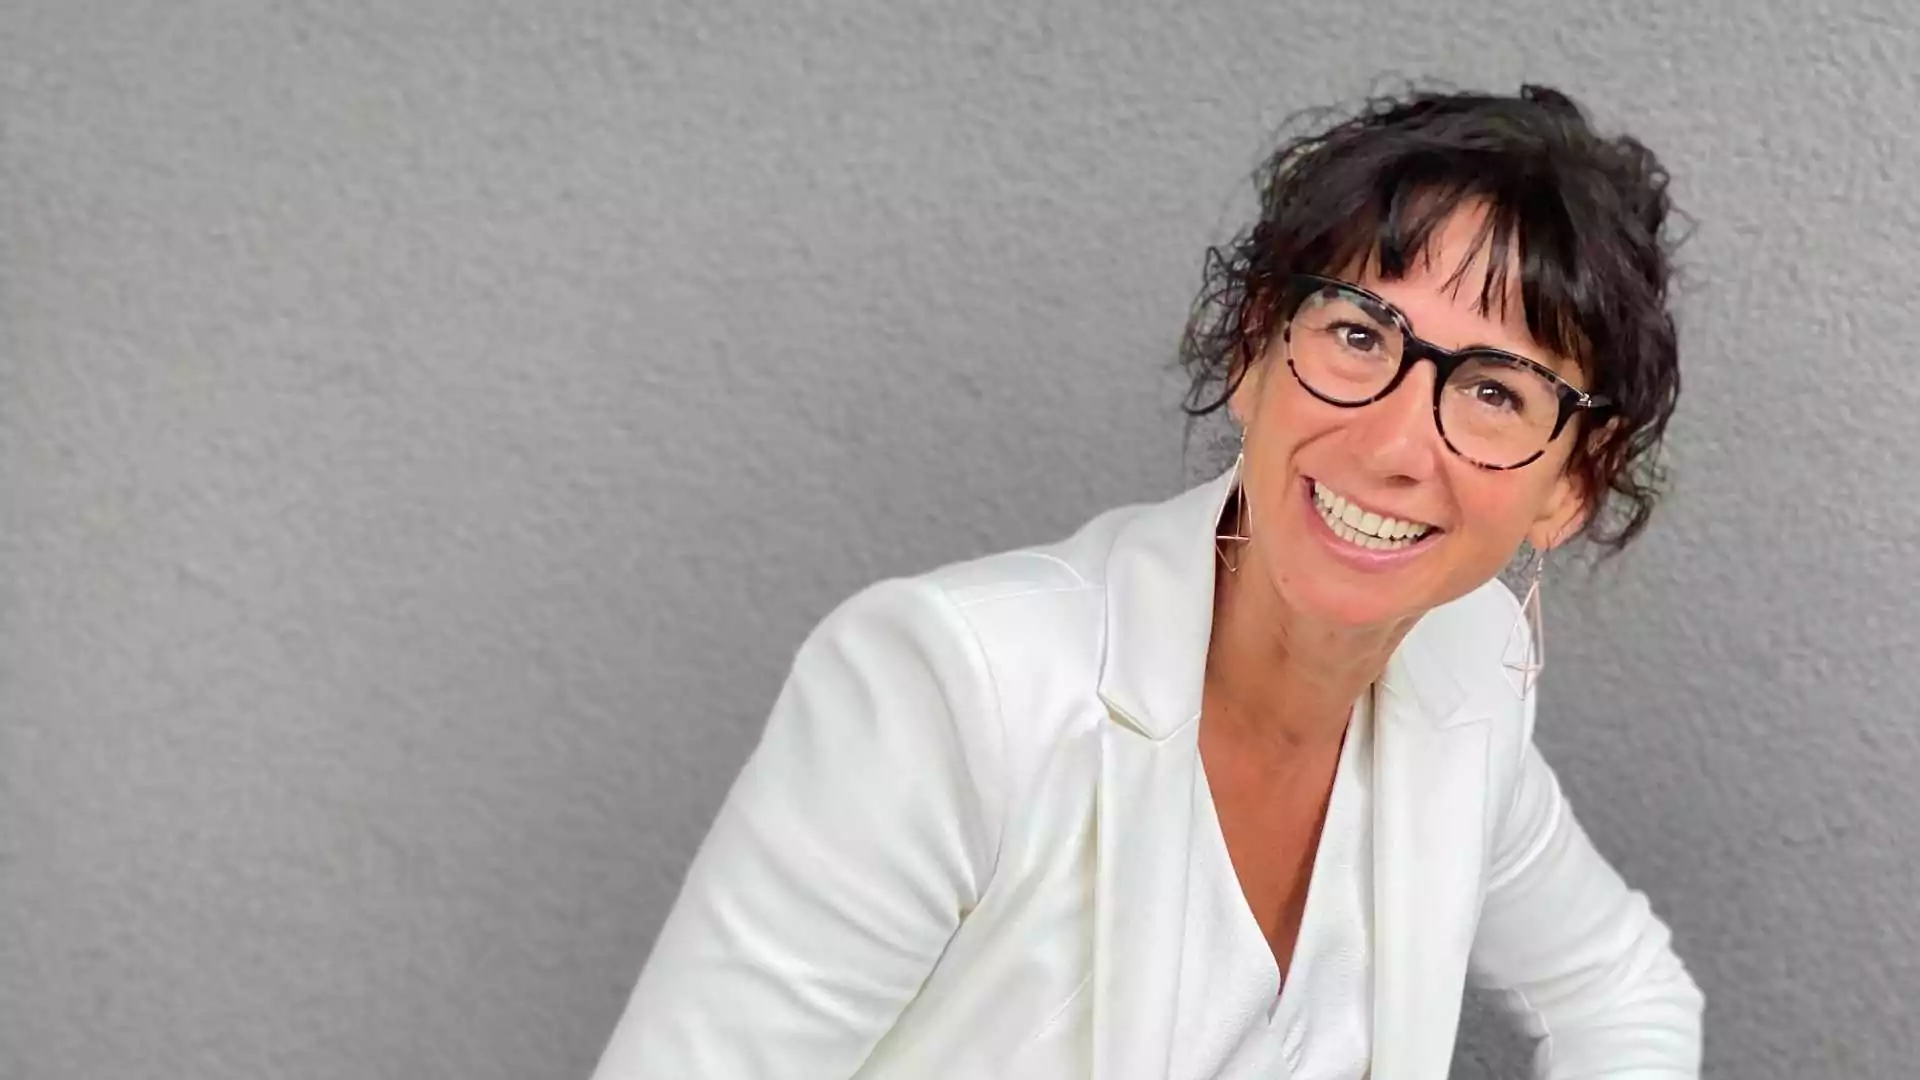 Claudia Potschigmann, Female Empowerment Coach, sitzt vor einer grauen Wand